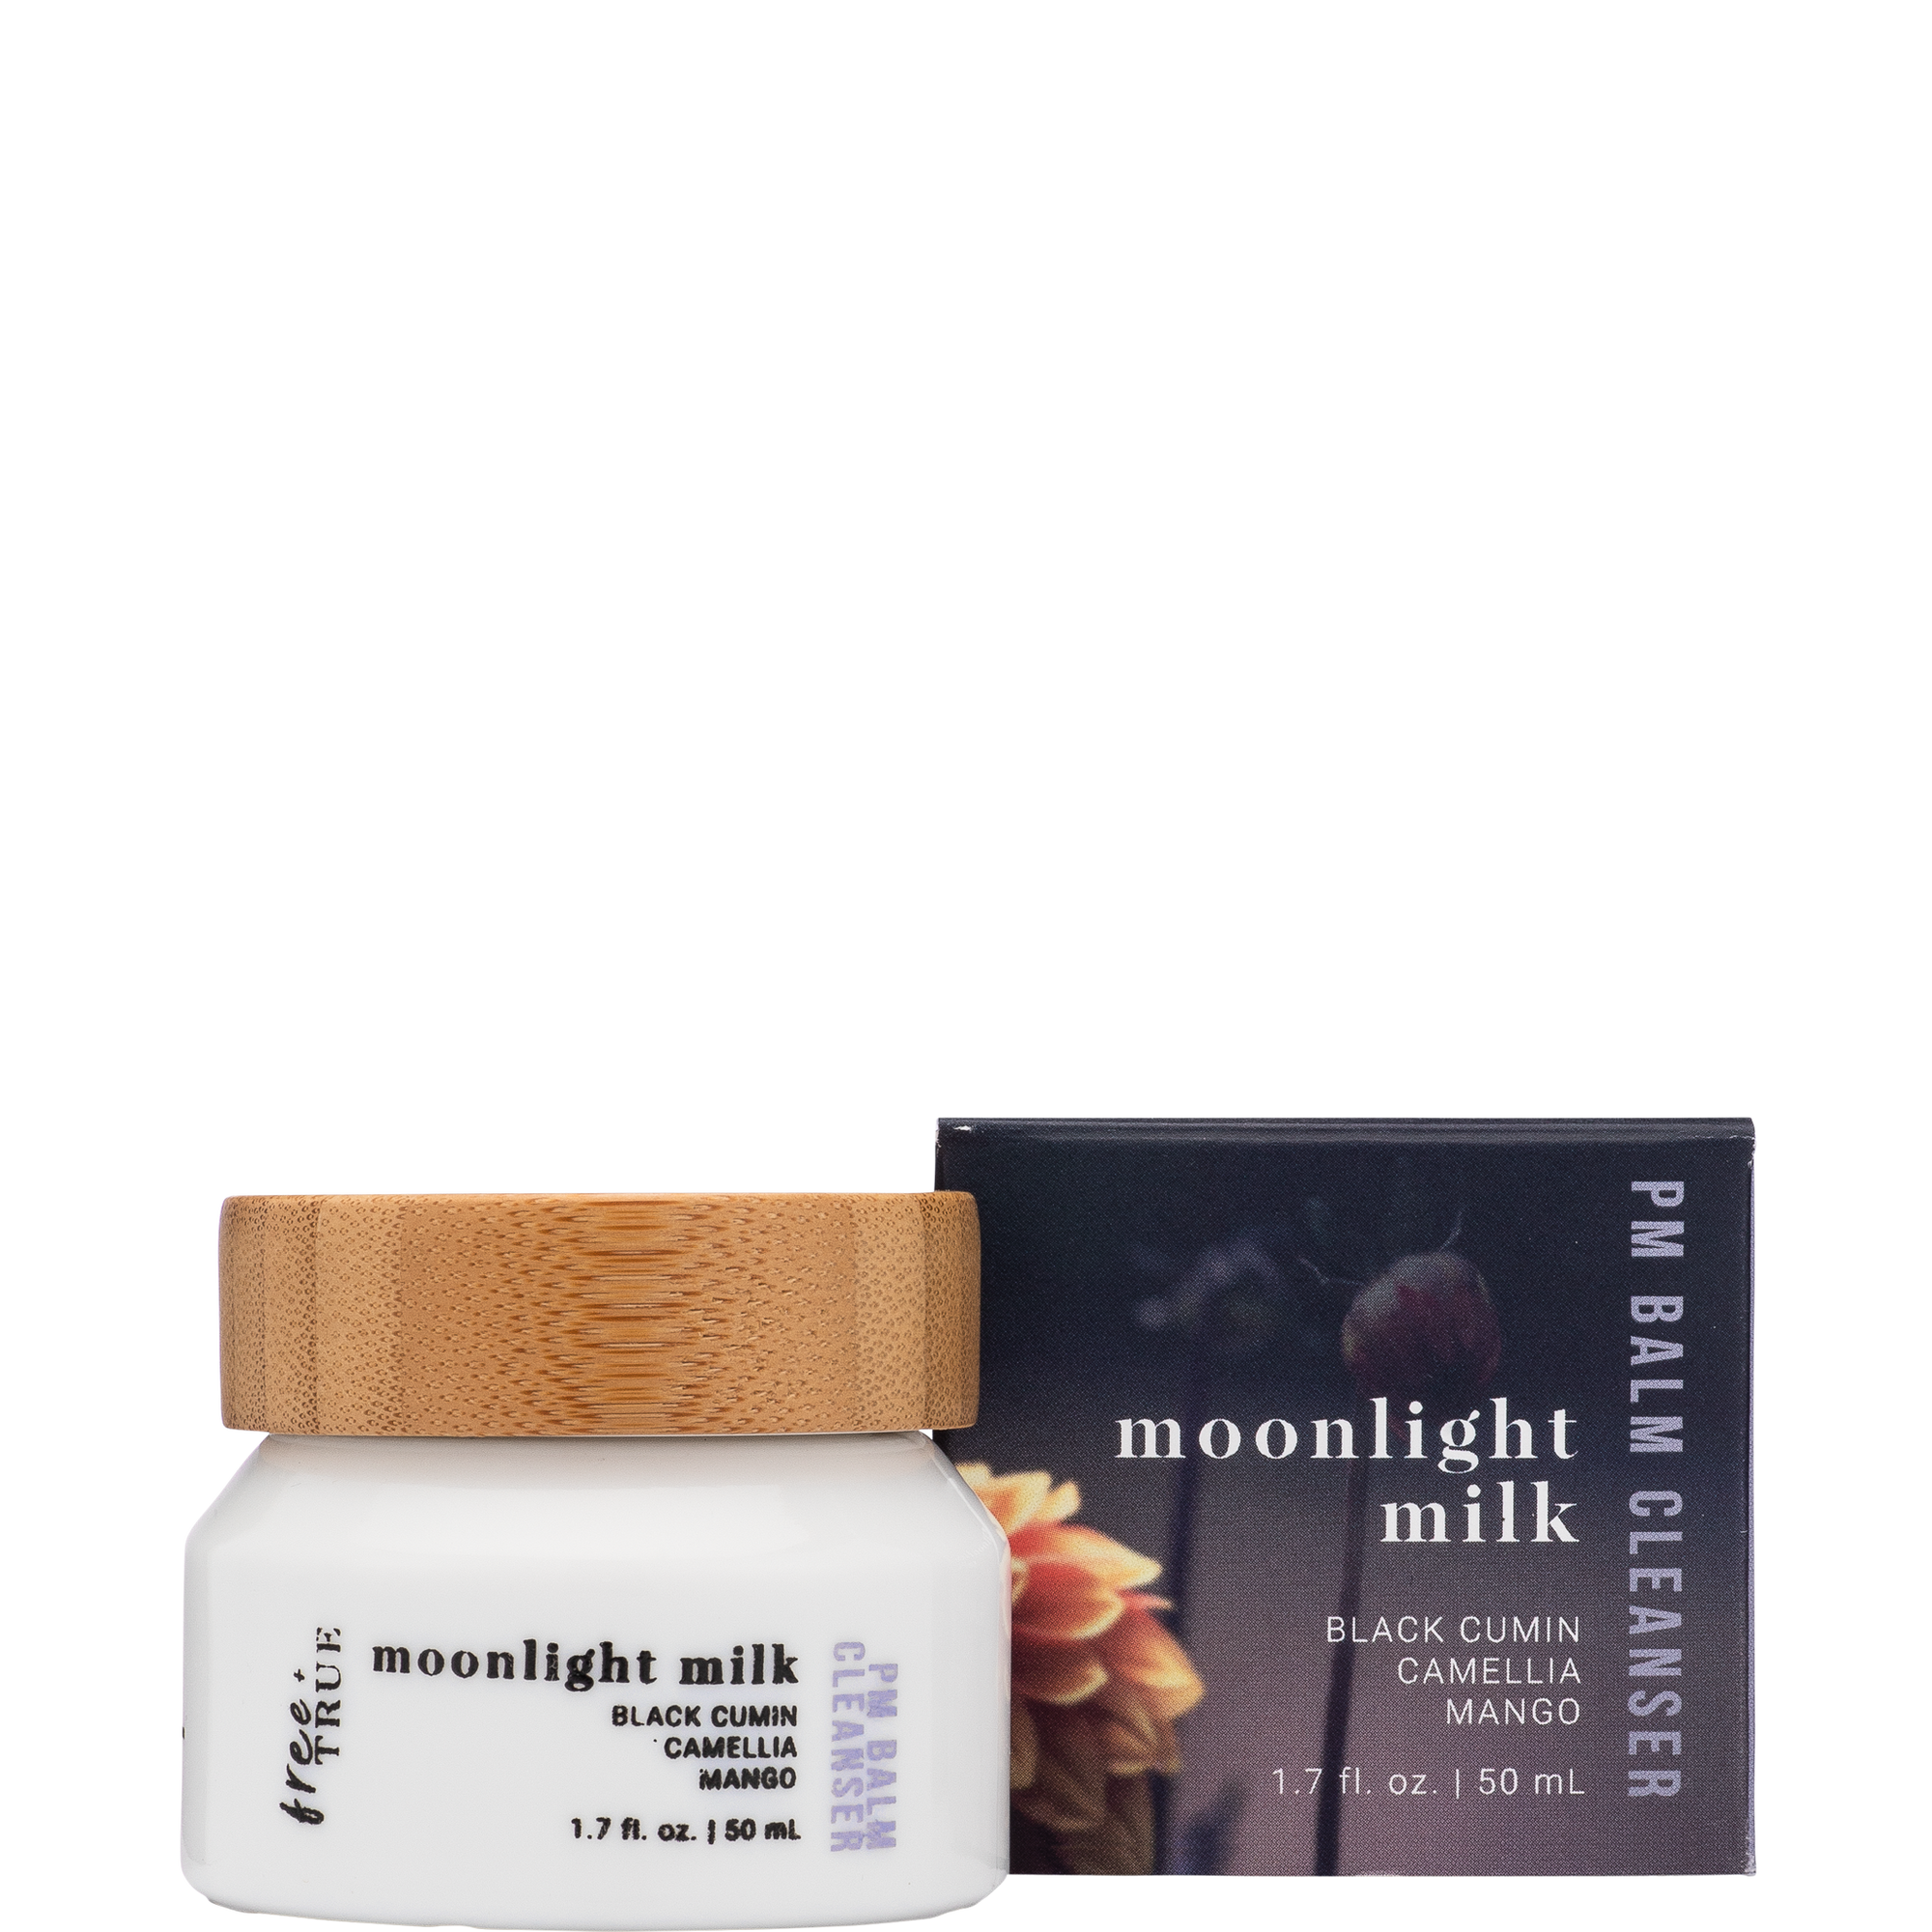 Moonlight Milk - Balm-to-Milk Cleanser